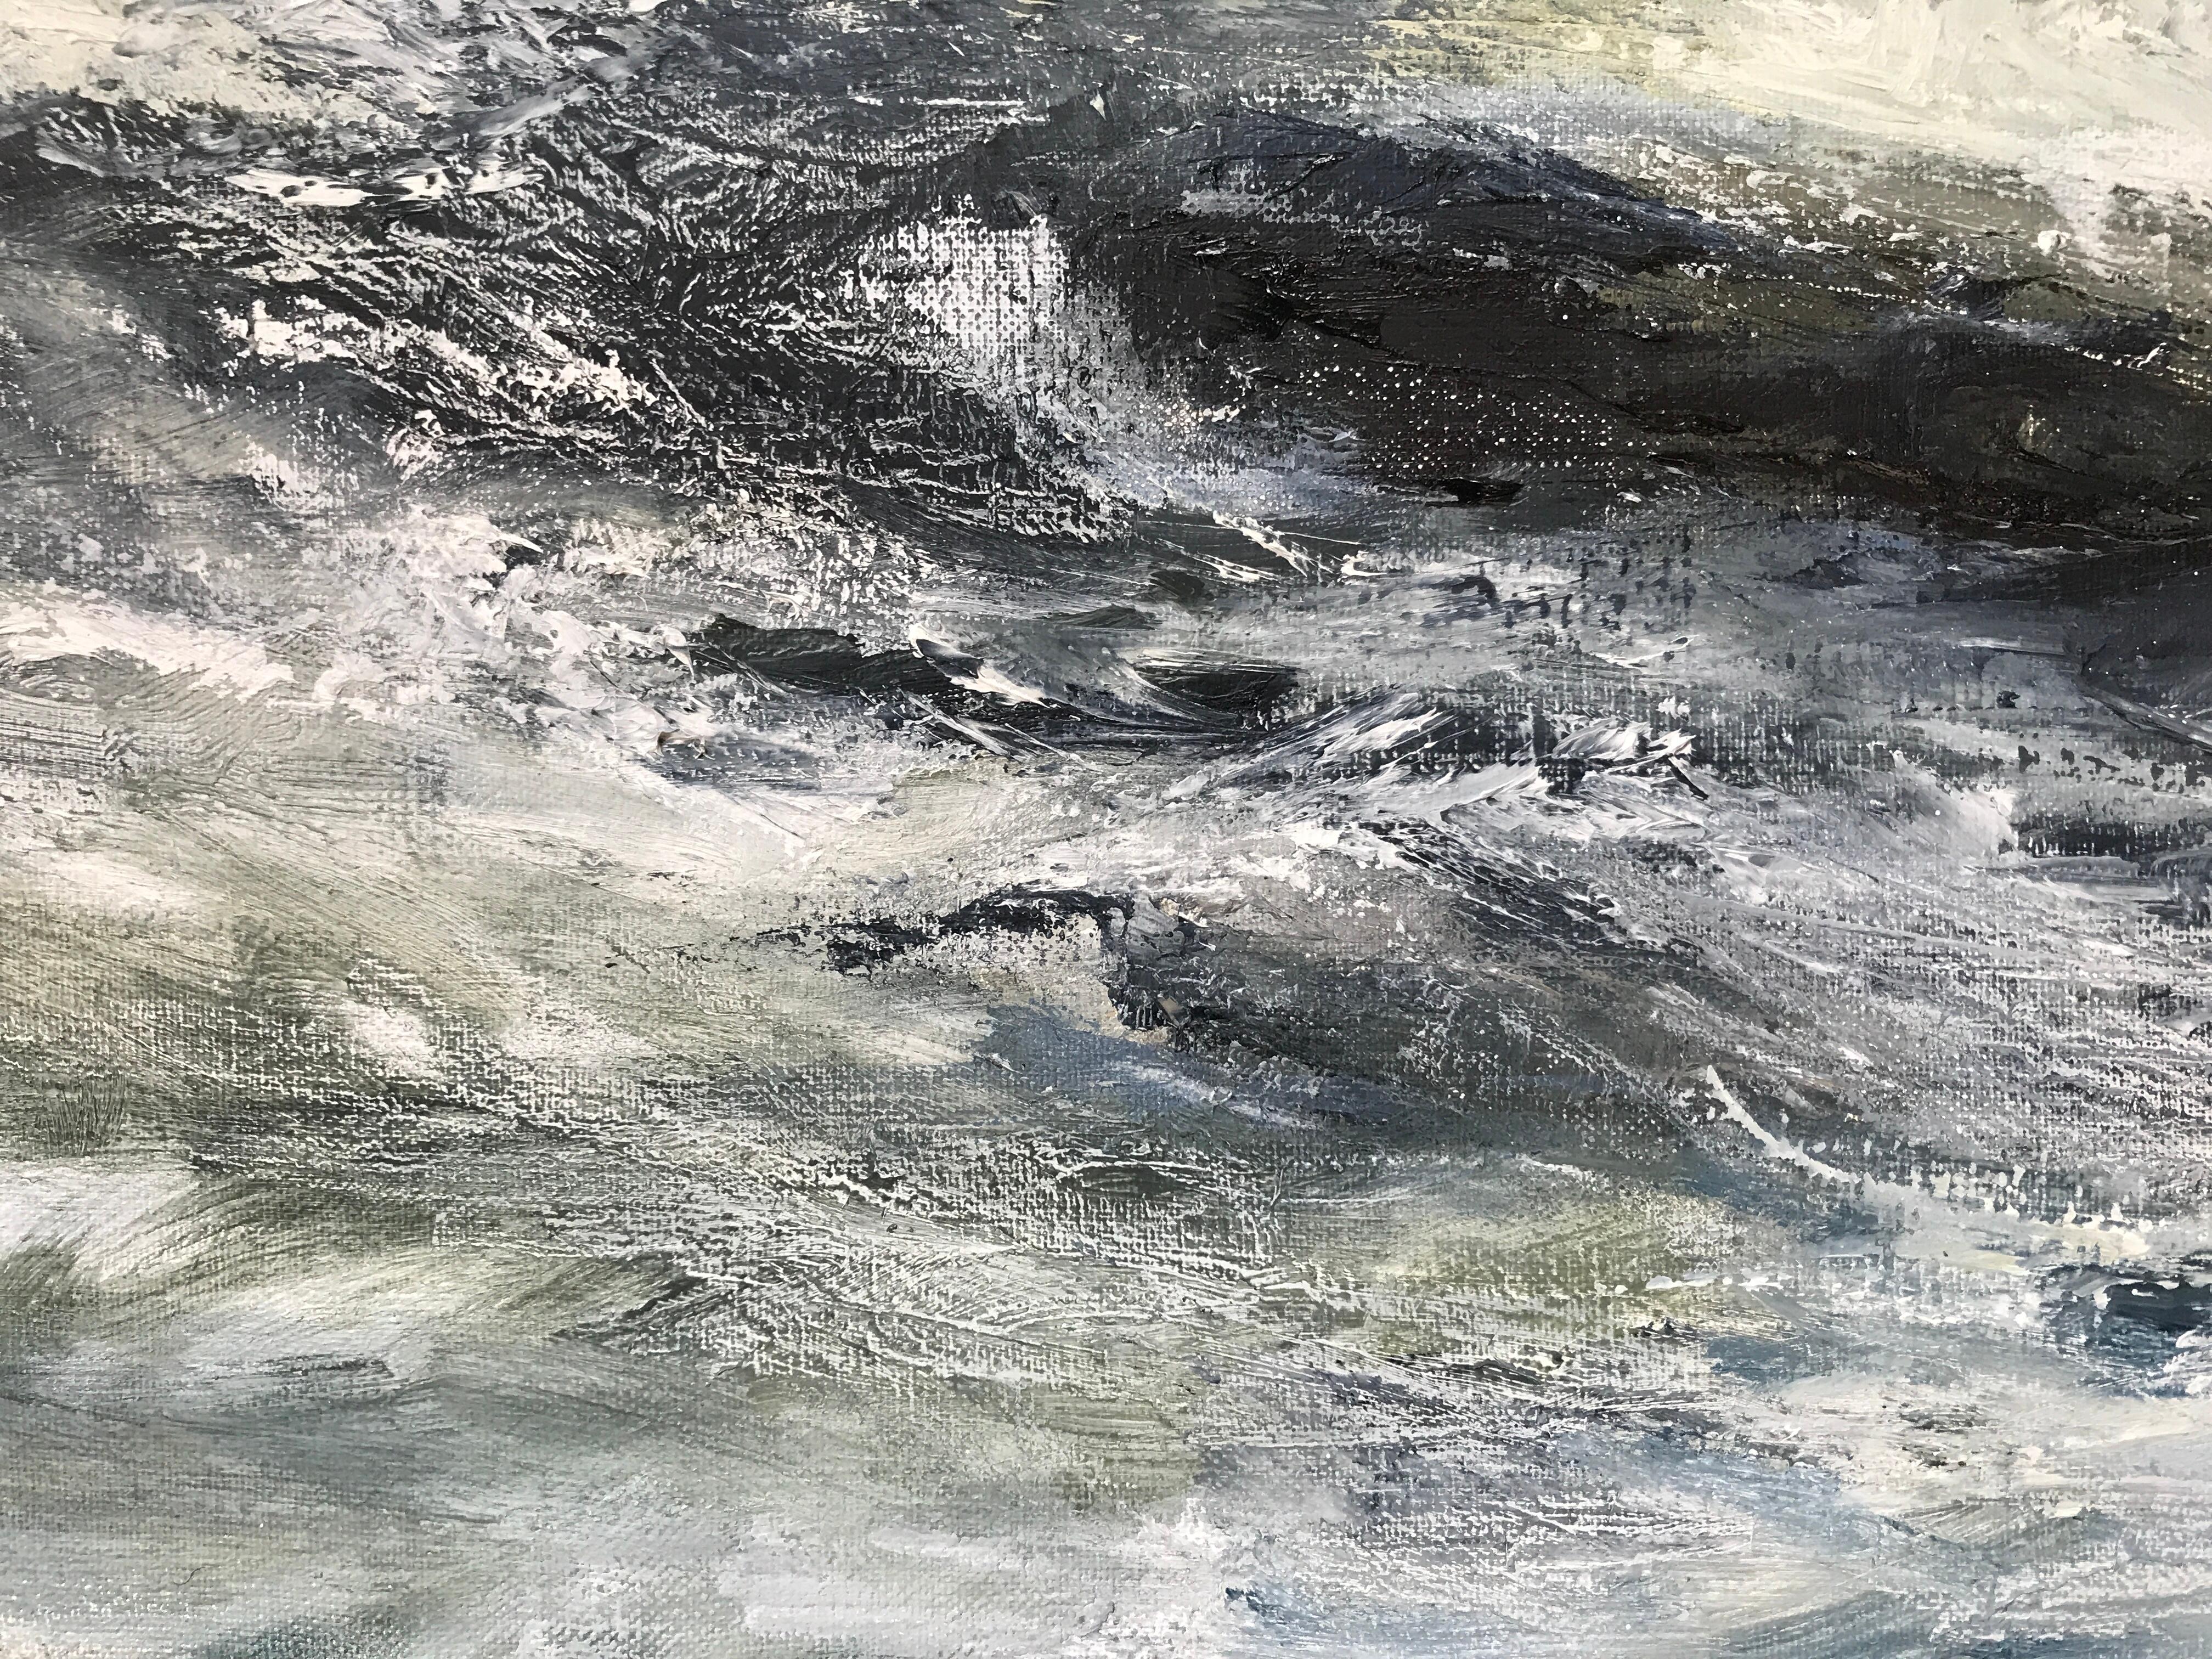 Une peinture à l'huile originale d'un paysage marin orageux. Au premier plan, les vagues se heurtent les unes aux autres, formant des éclaboussures qui atteignent presque les mouettes blanches qui volent au-dessus d'elles. 

INFORMATIONS